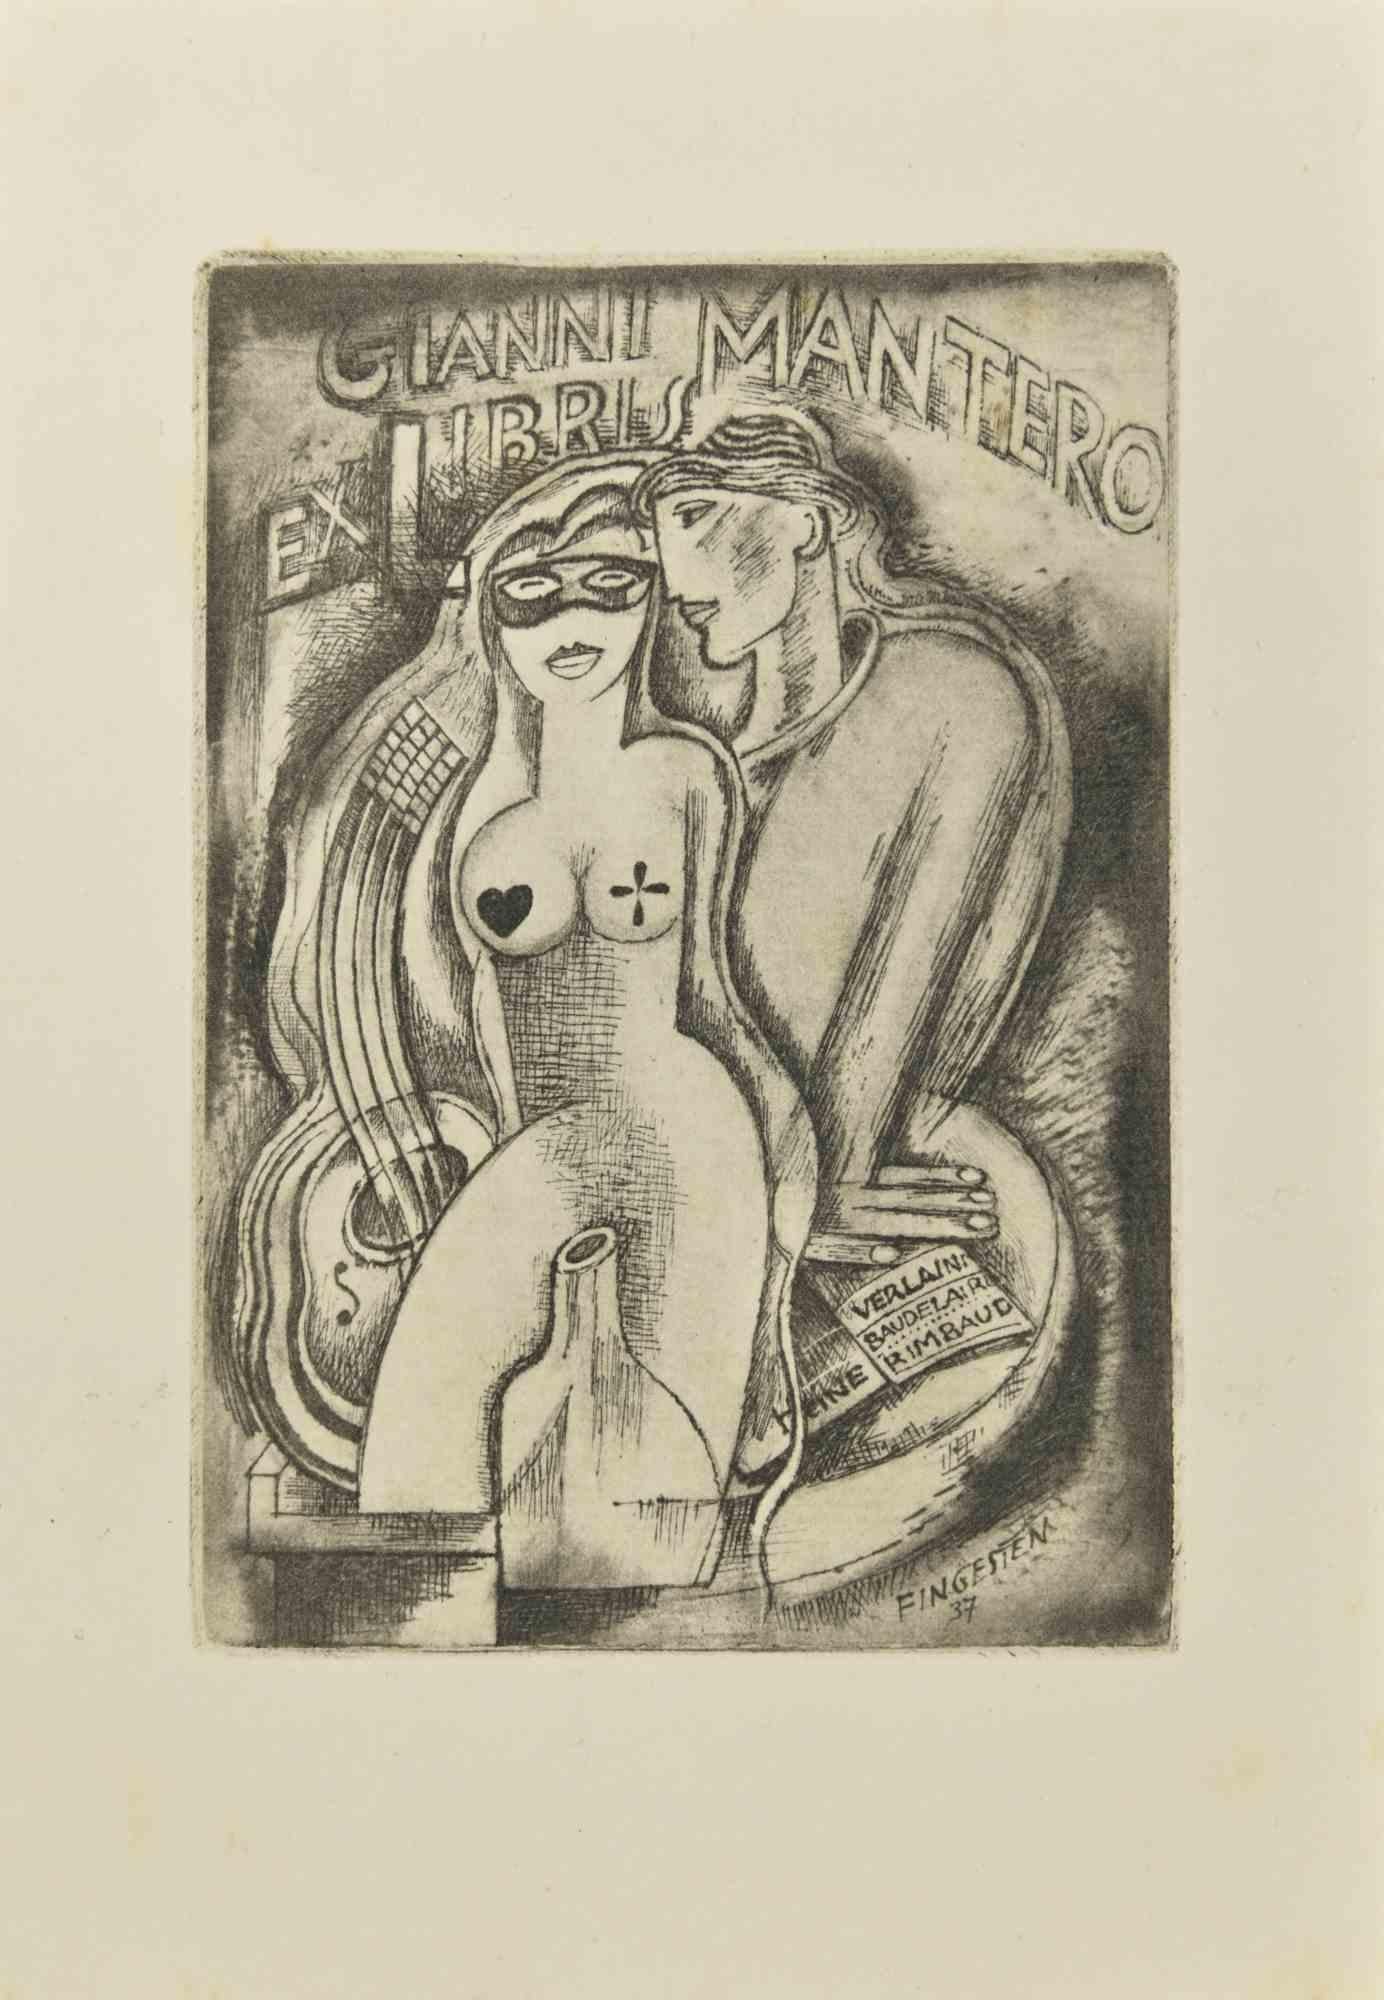 Ex Libris - Gianni Mantero est une gravure à l'eau-forte créée par  Michel Fingesten en 1937.

Signé sur la plaque et daté sur  la marge inférieure droite.

Bonnes conditions sauf quelques rousseurs qui n'affectent pas l'image.

Michel Fingesten